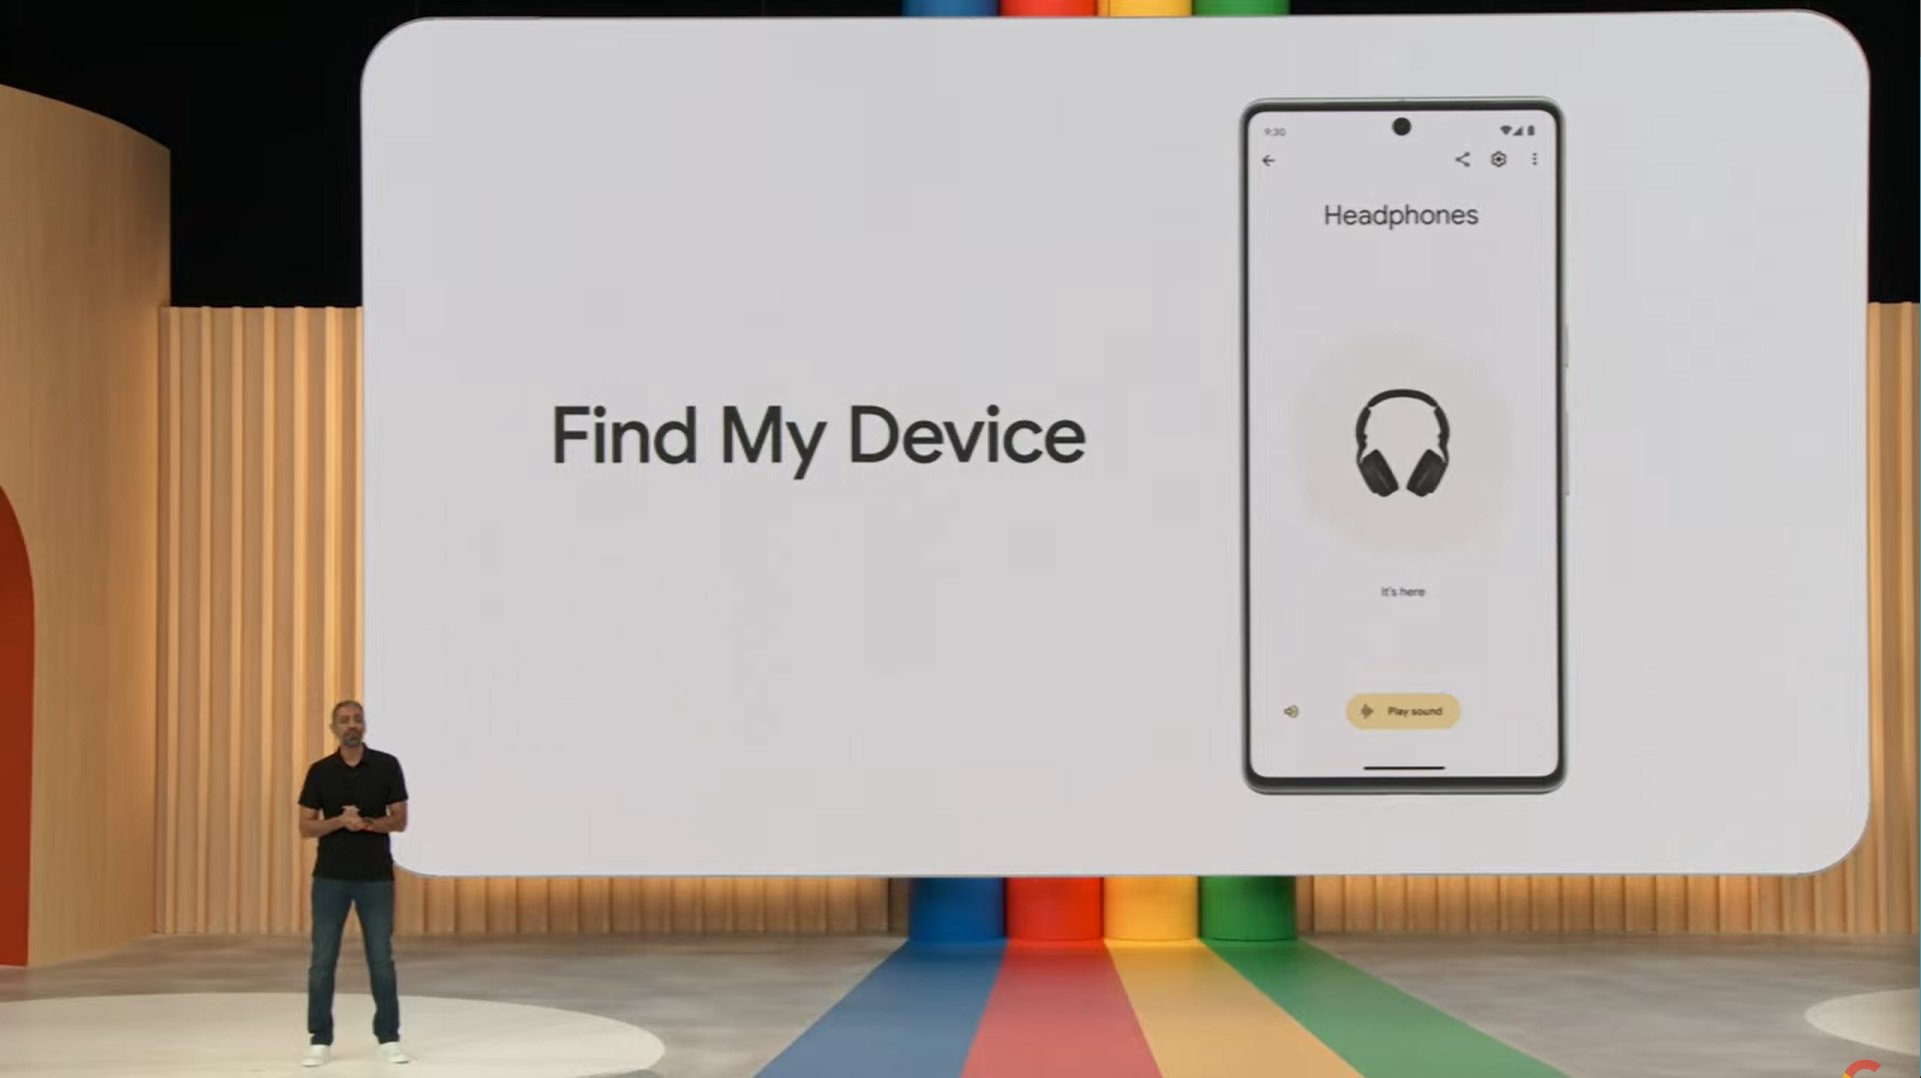 Novidades do Find My Device foram reveladas em maio deste ano no Google I/O.